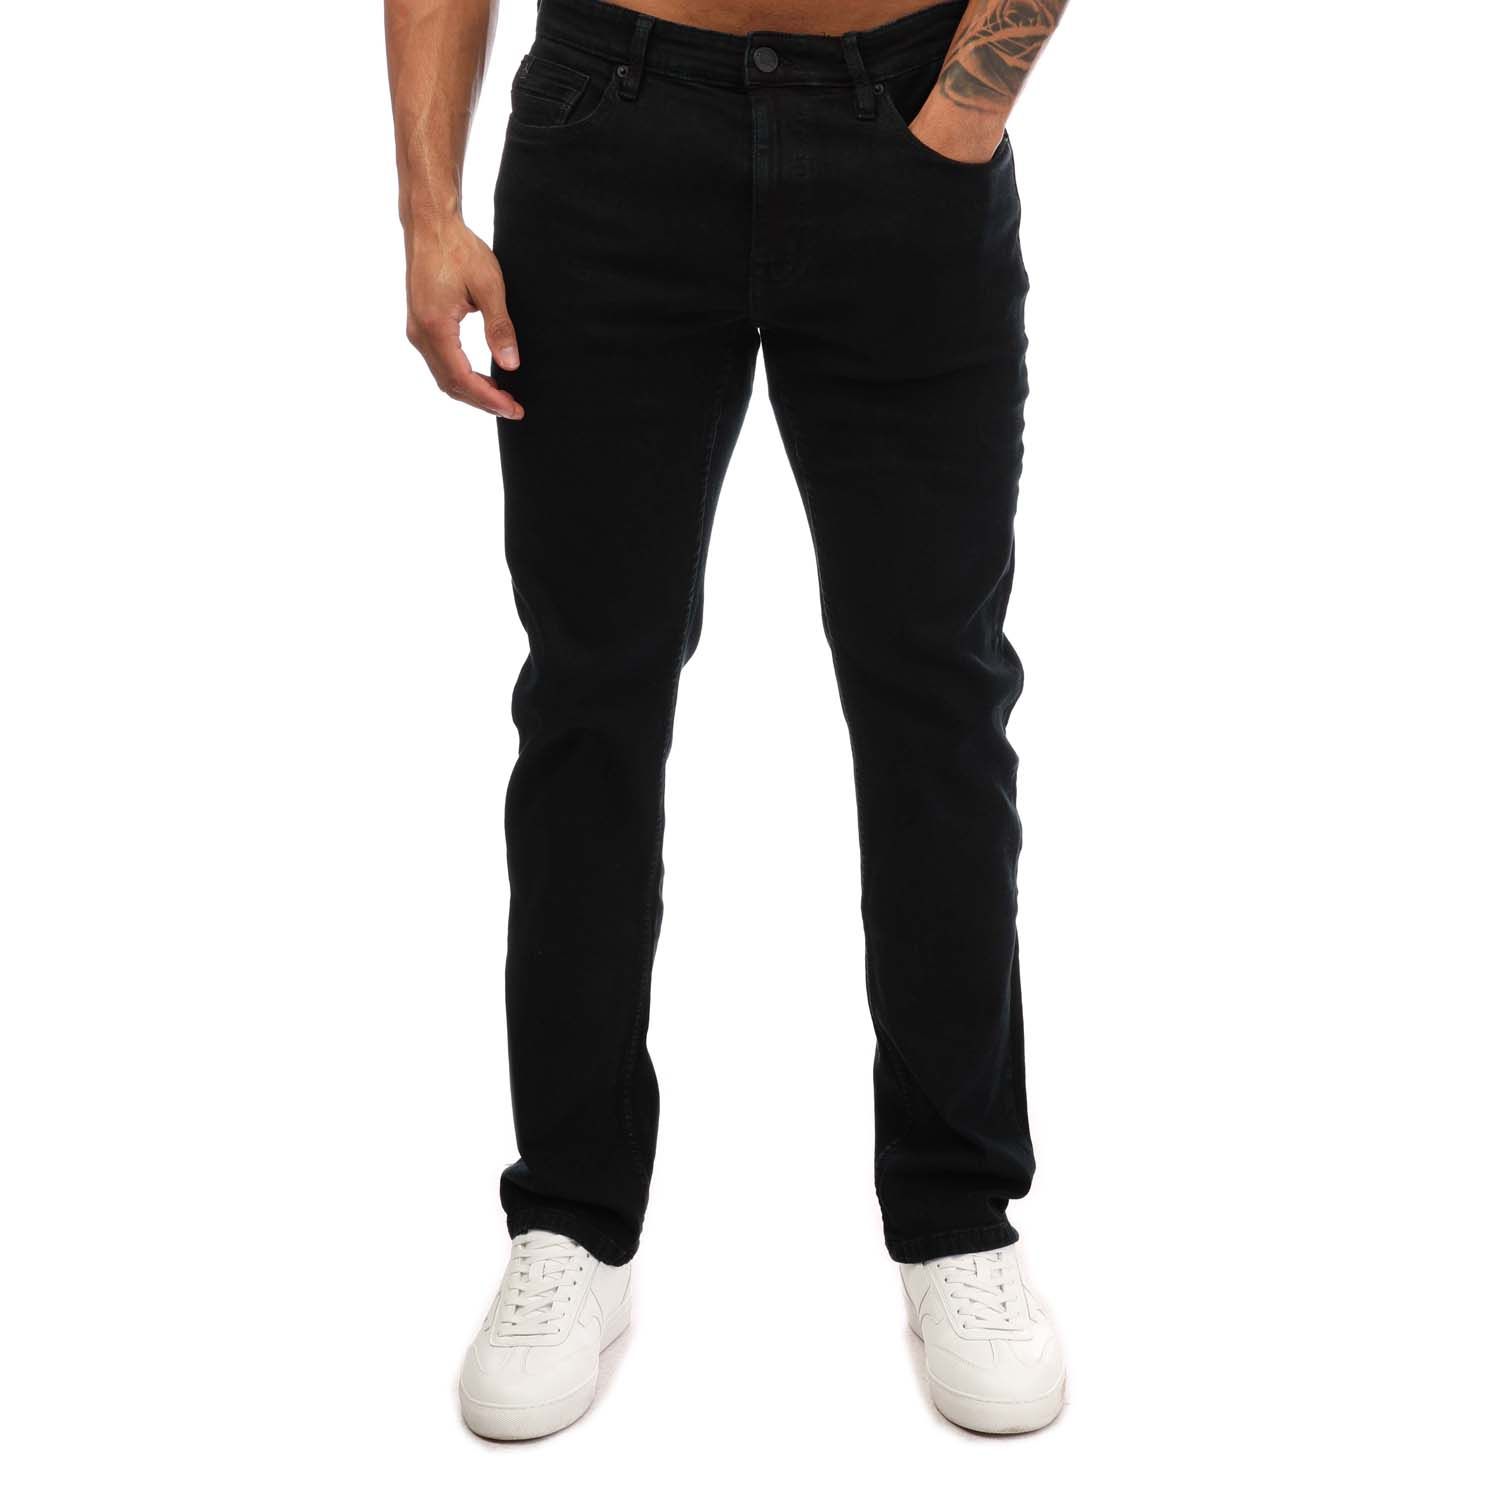 Black Original Penguin Mens Slim Fit Stretch Jeans - Get The Label